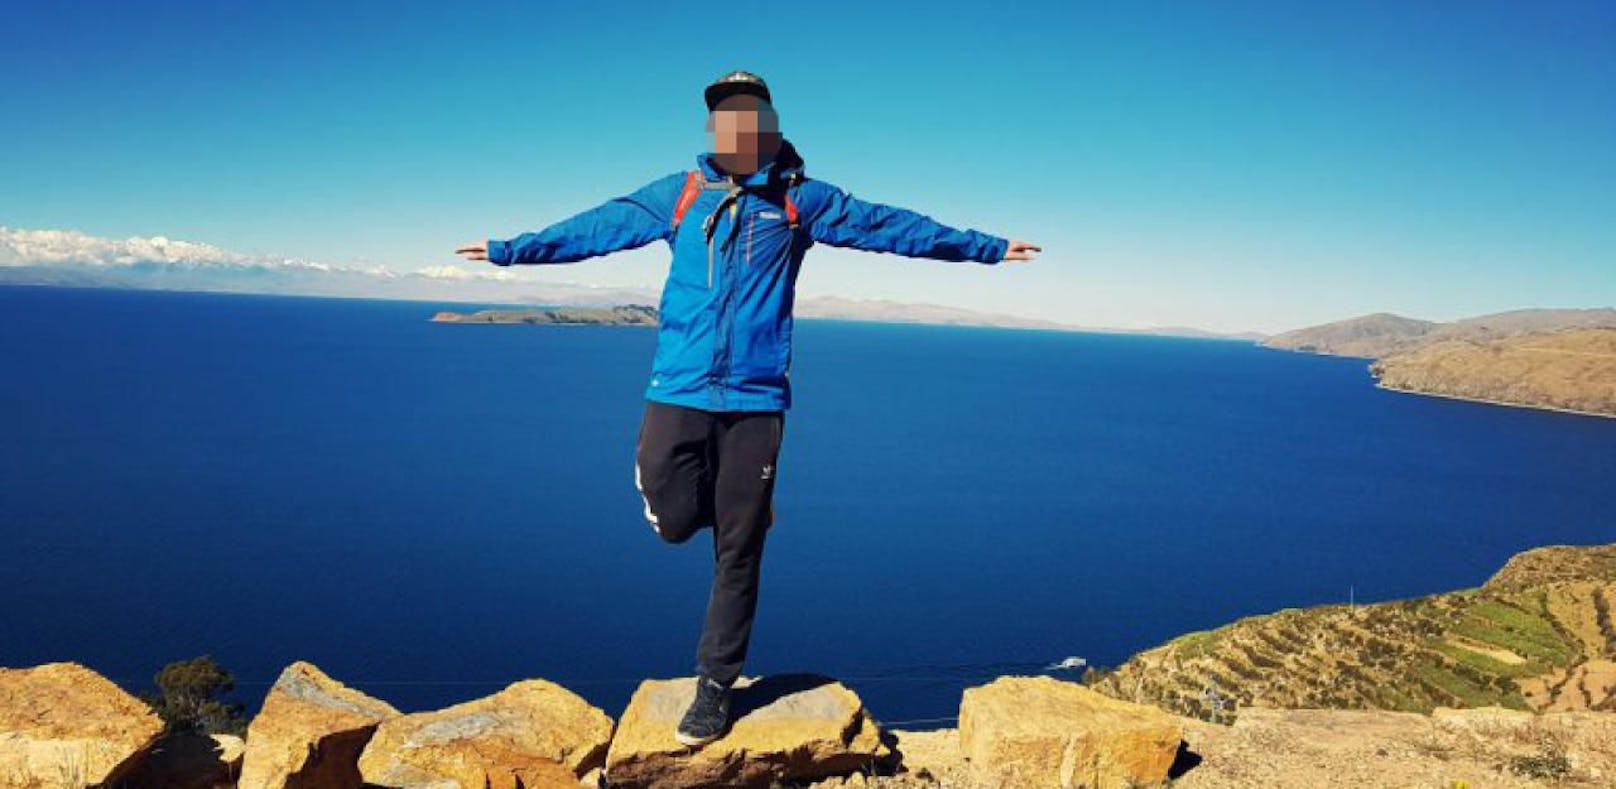 Blogger (25) stürzt bei Weltreise von Berg – tot!